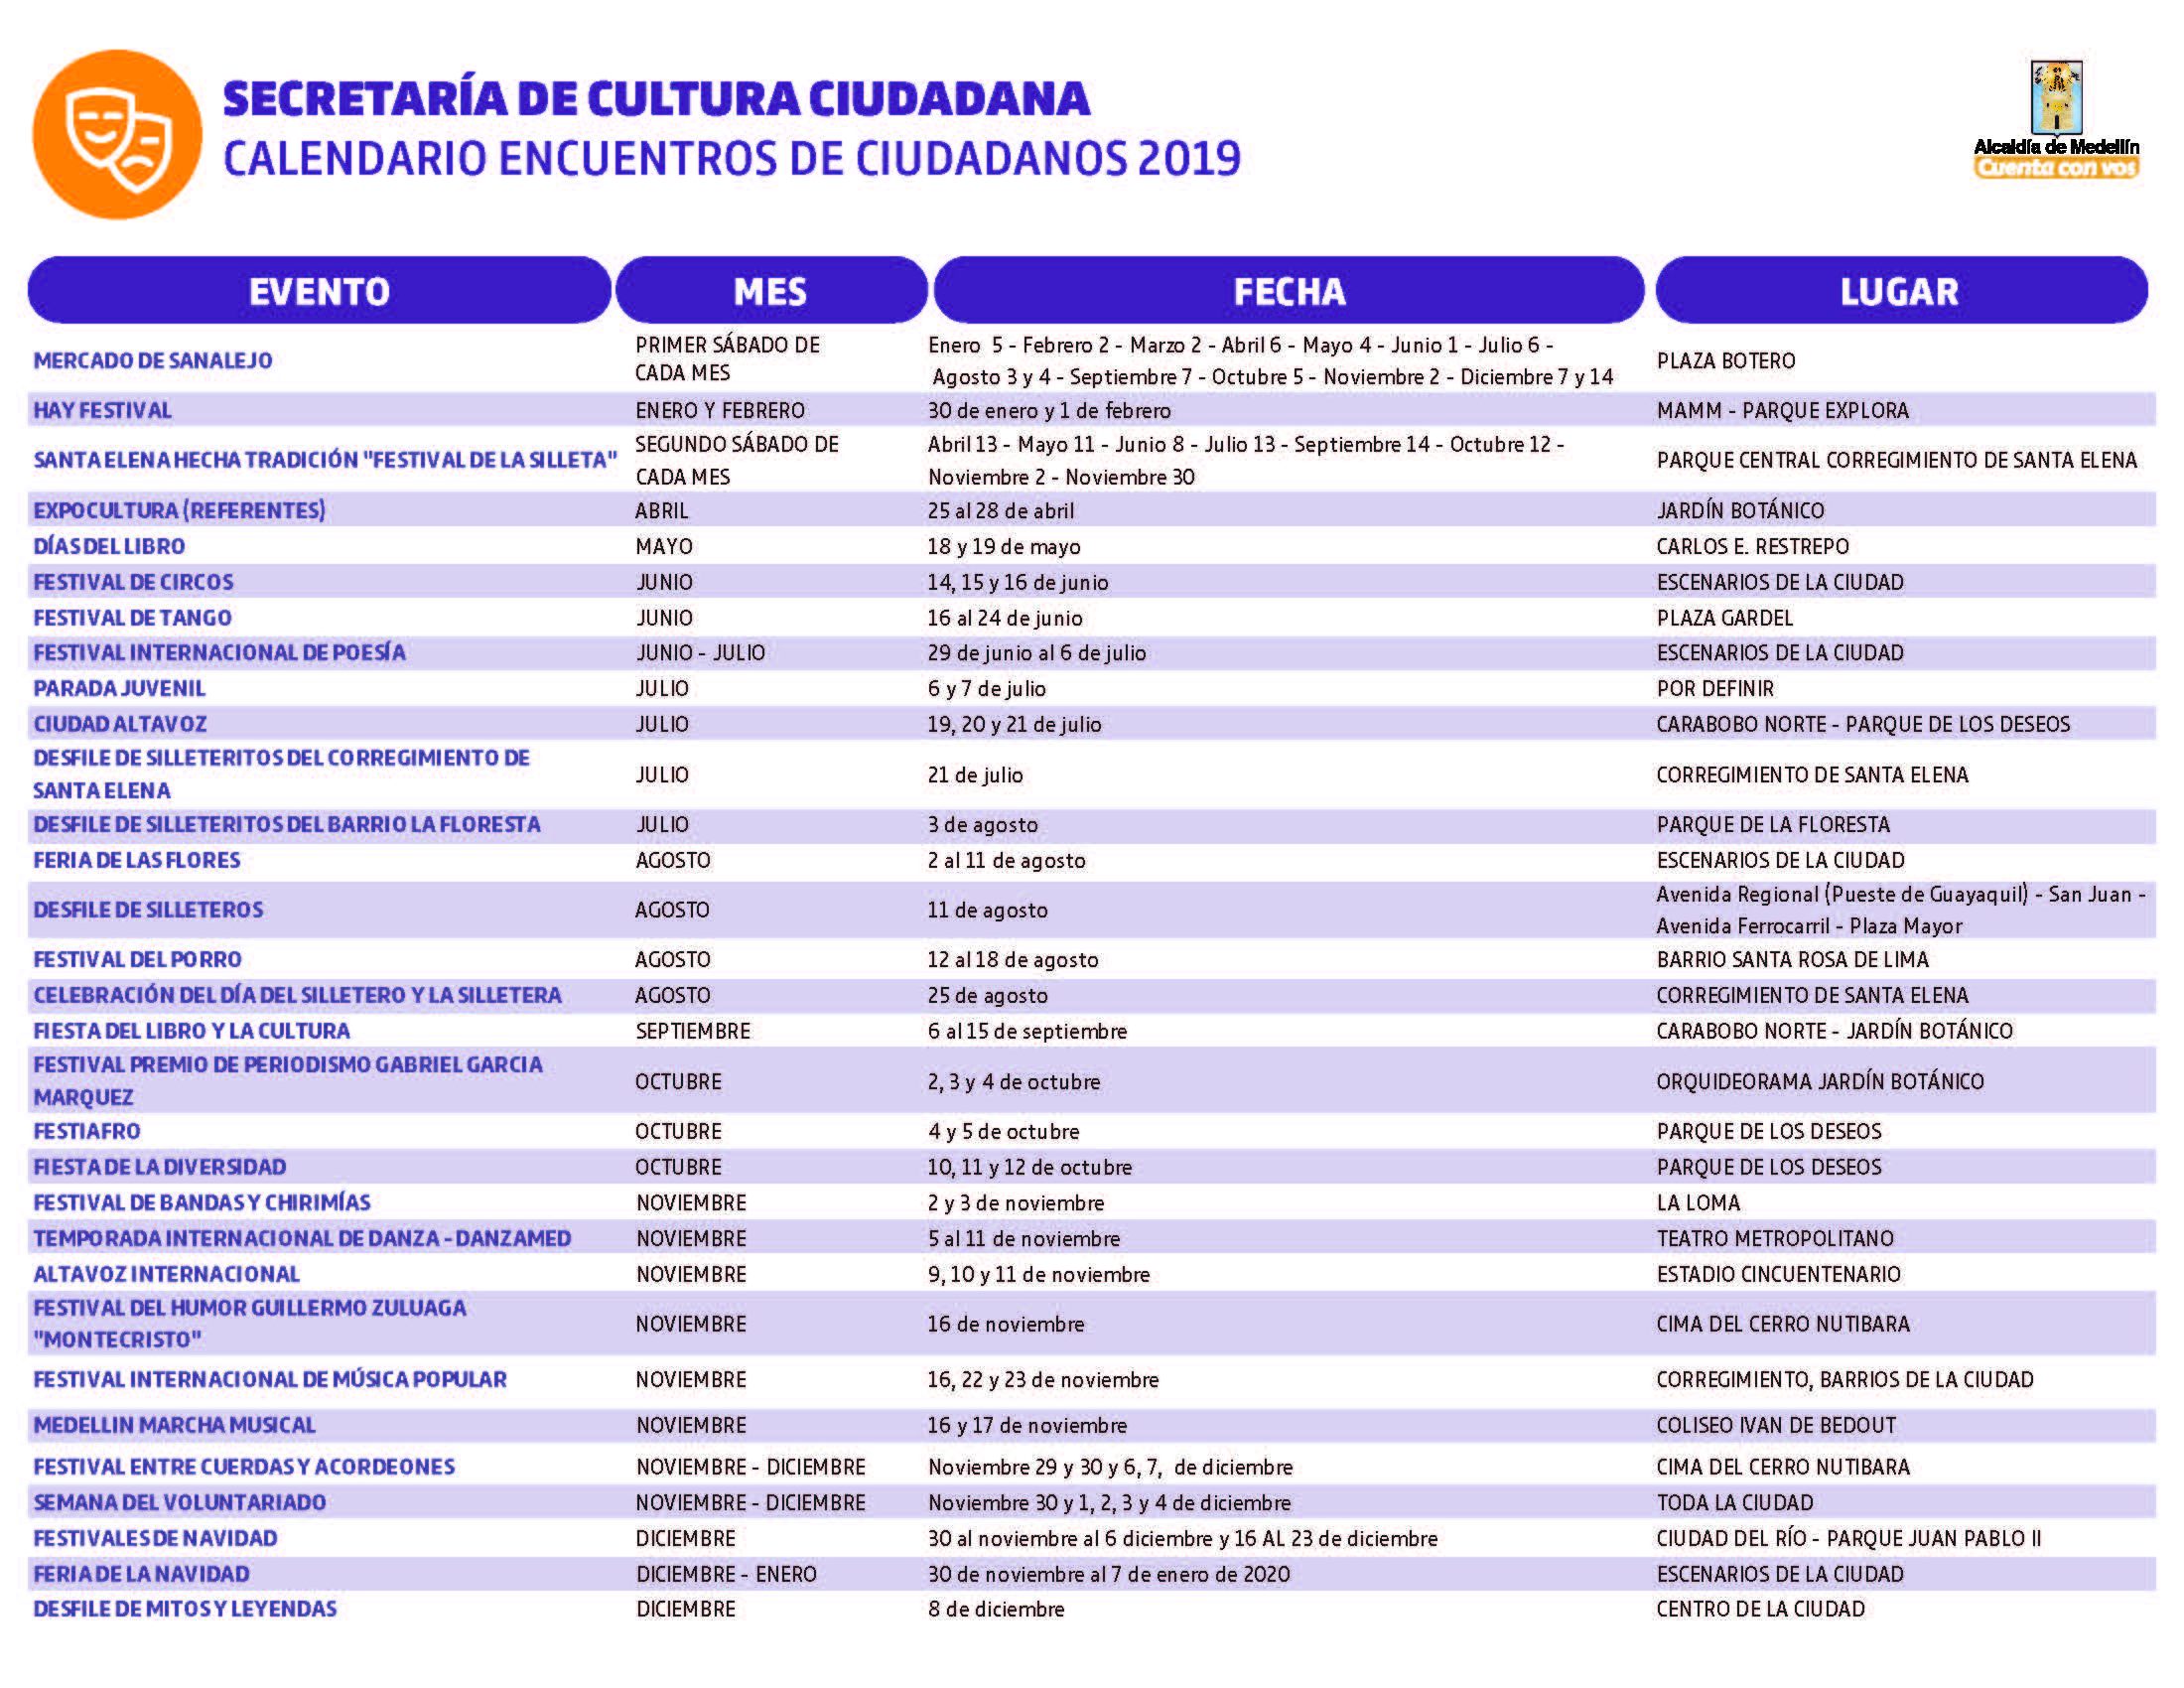 Calendario de Encuentros Ciudadanos 2019